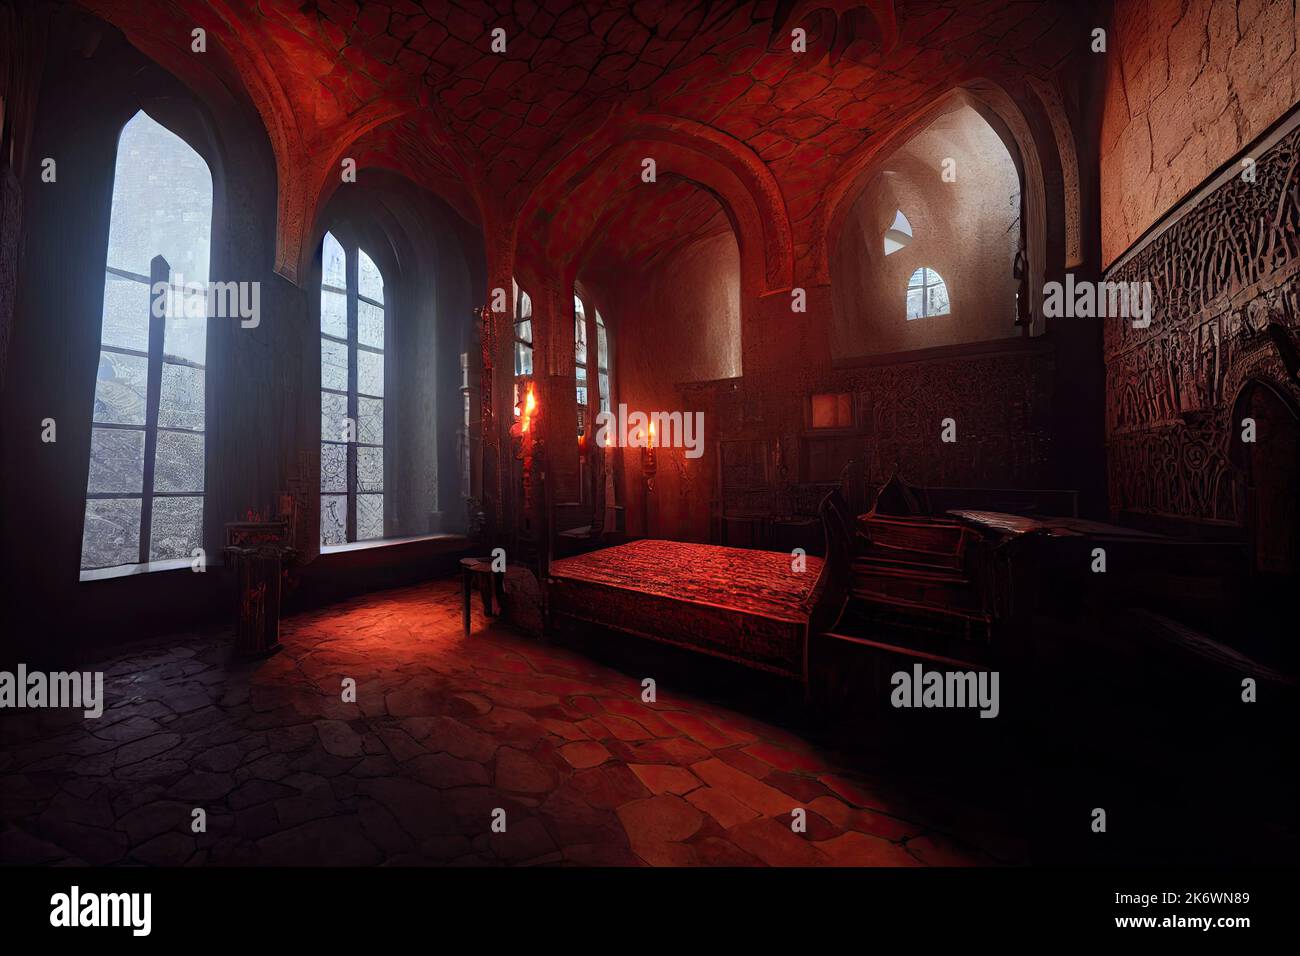 Intérieur du château de Dracula, meubles victoriens chambre éclairée par des chandeliers thème d'horreur Halloween. Atmosphère gothique à l'intérieur de l'ancien Banque D'Images